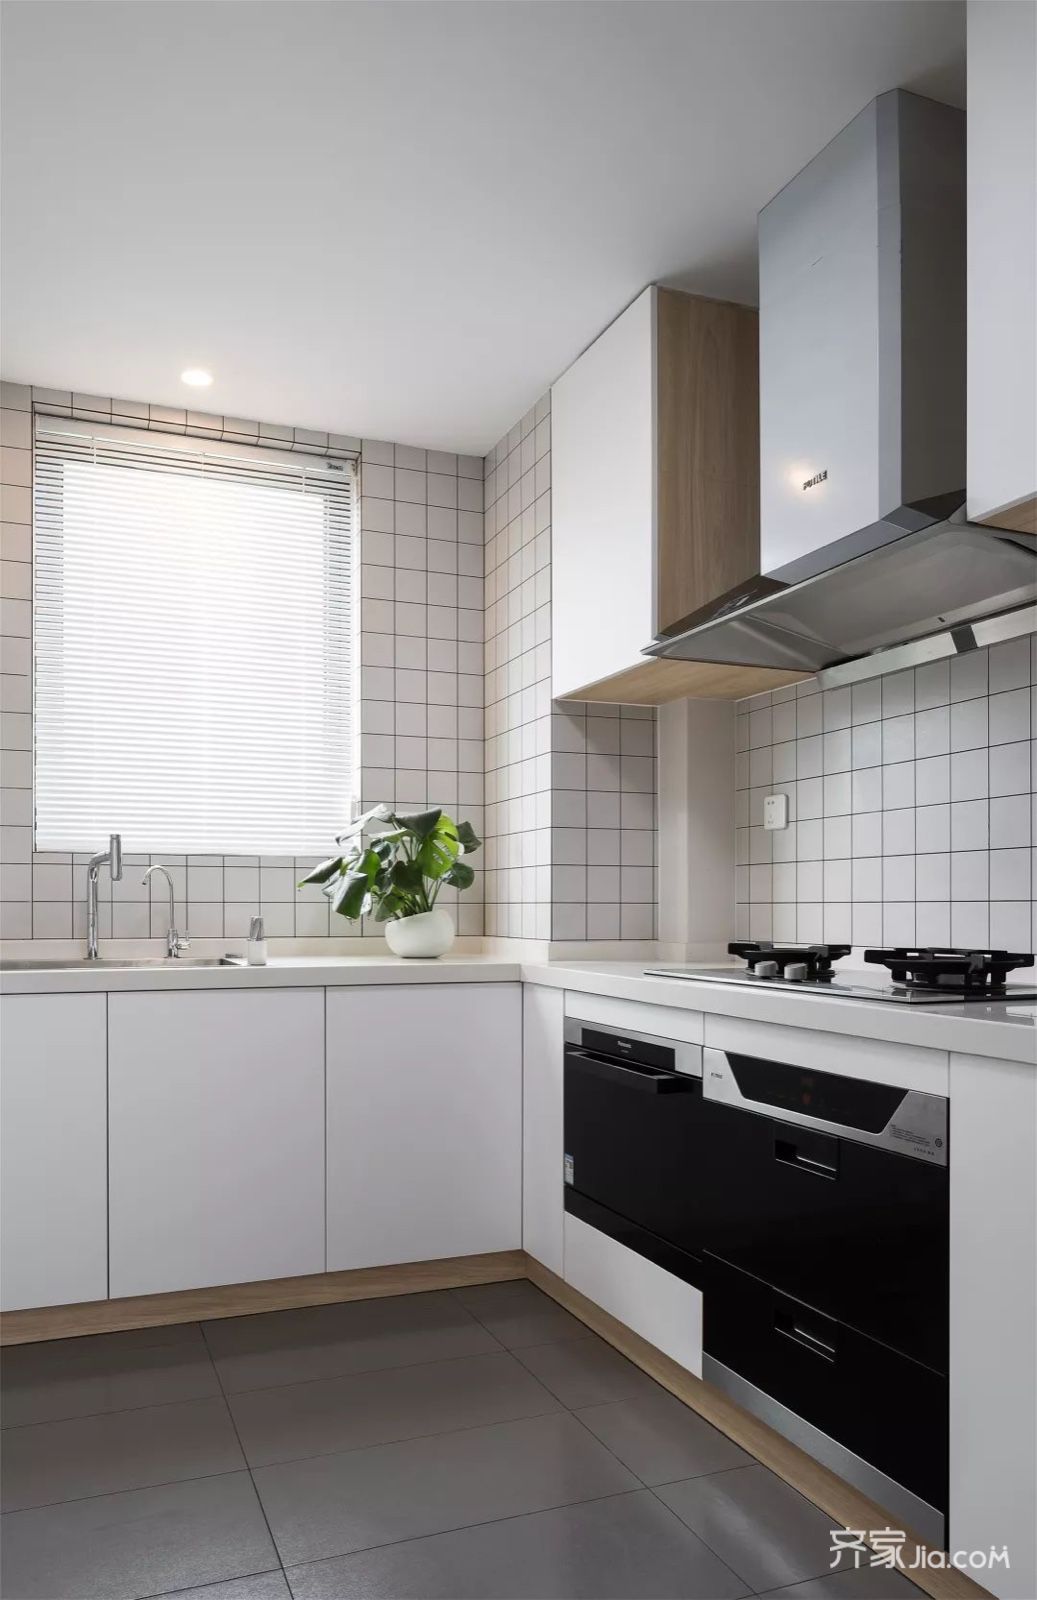 l形的厨房,在灰色地面砖的基础,白色小格砖 摆设橱柜搭配,整体厨房